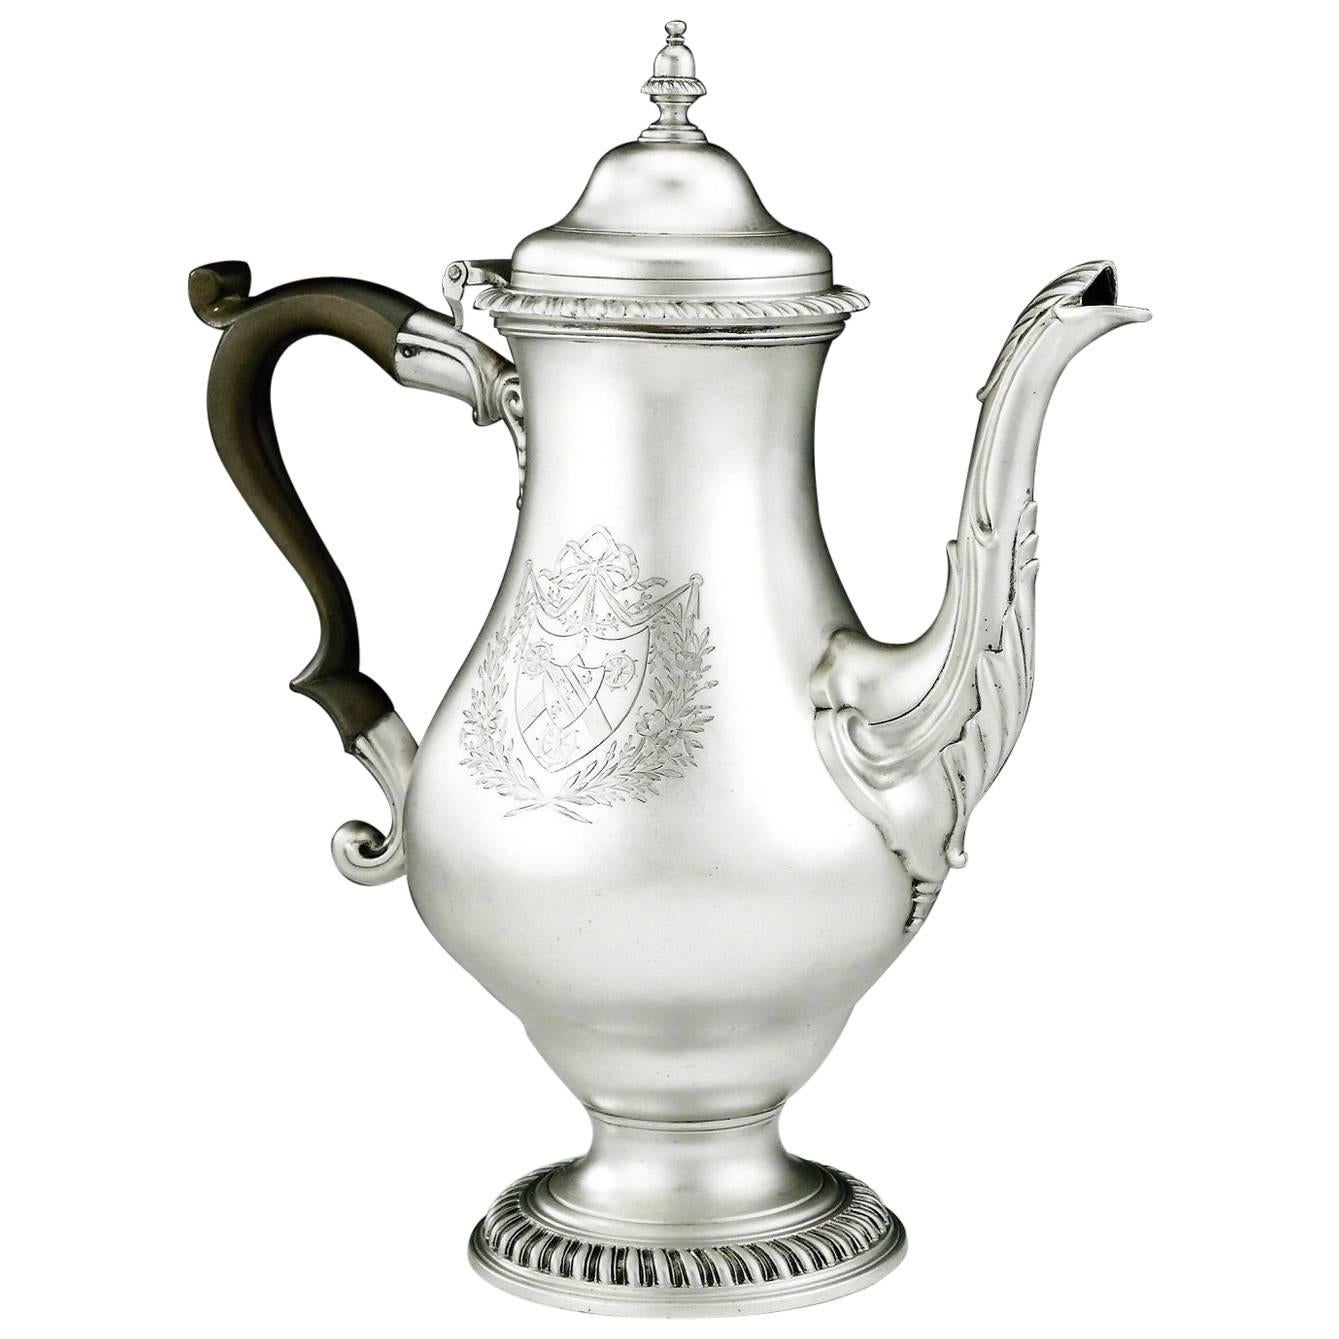 Pot à café George III extrêmement raffiné fabriqué à Londres en 1772 par John Deacon